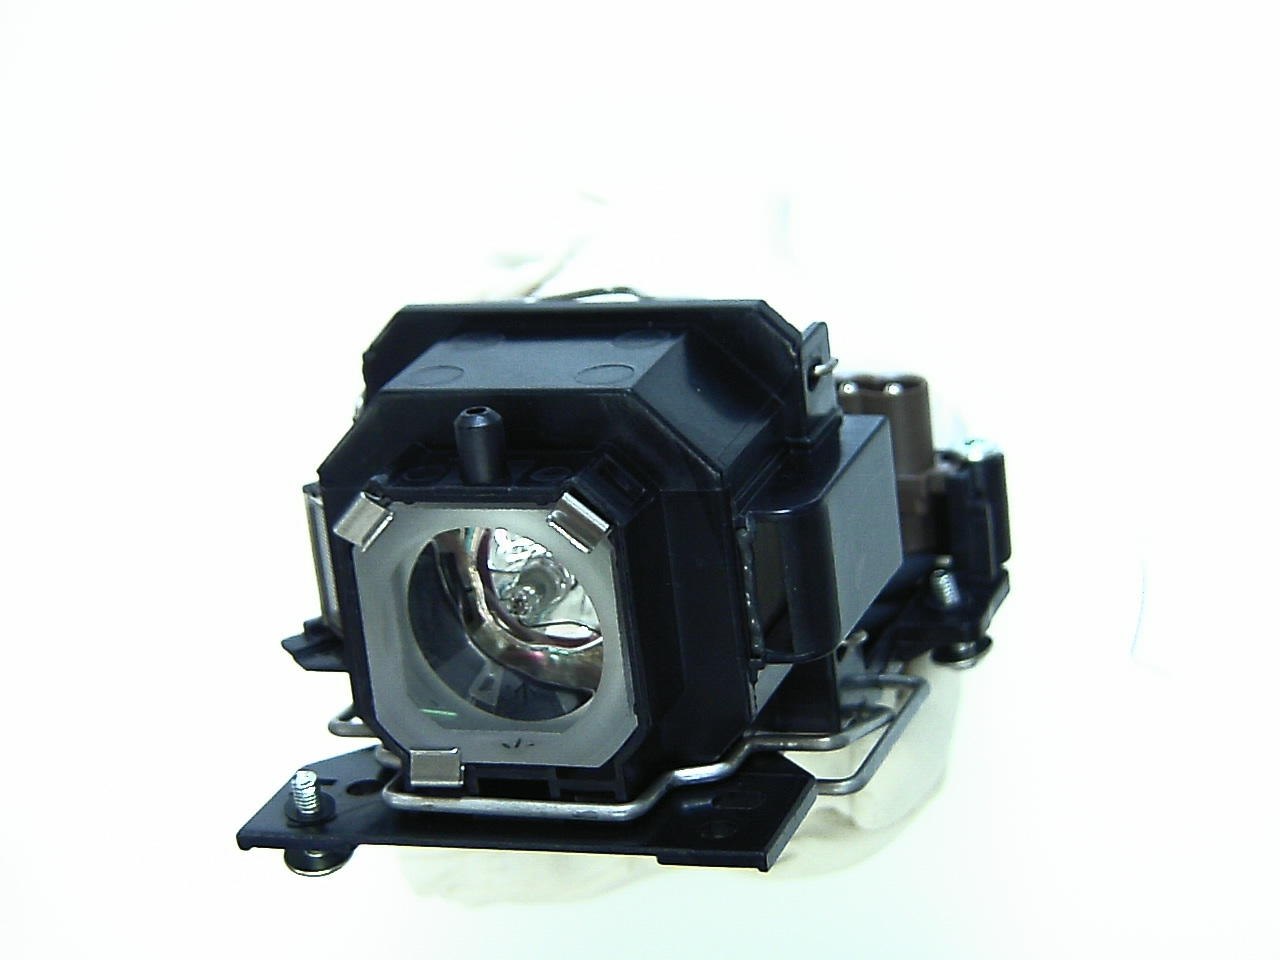 Hitachi Original Lamp For Hitachi CP-X1 Projector